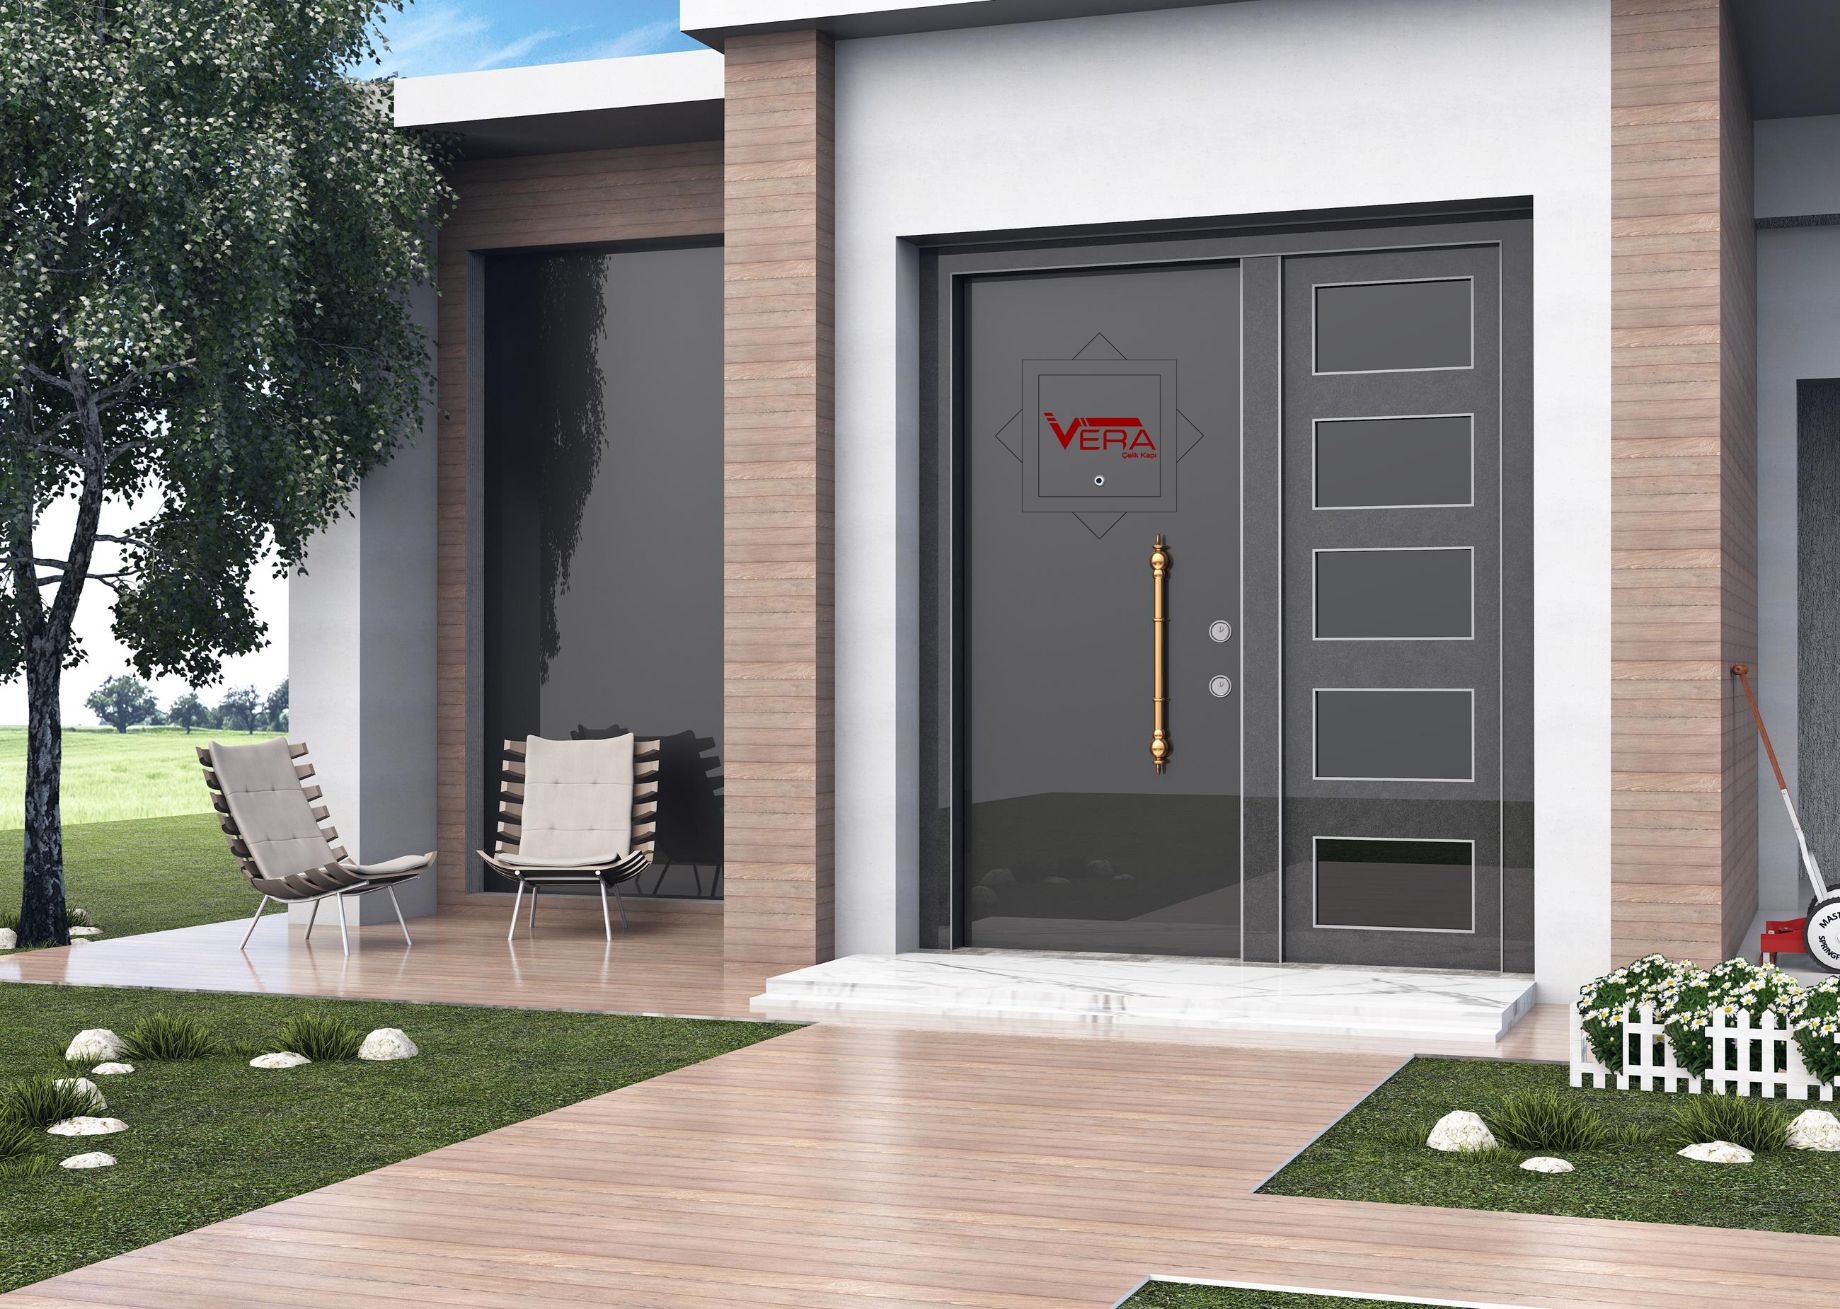 Villa Door